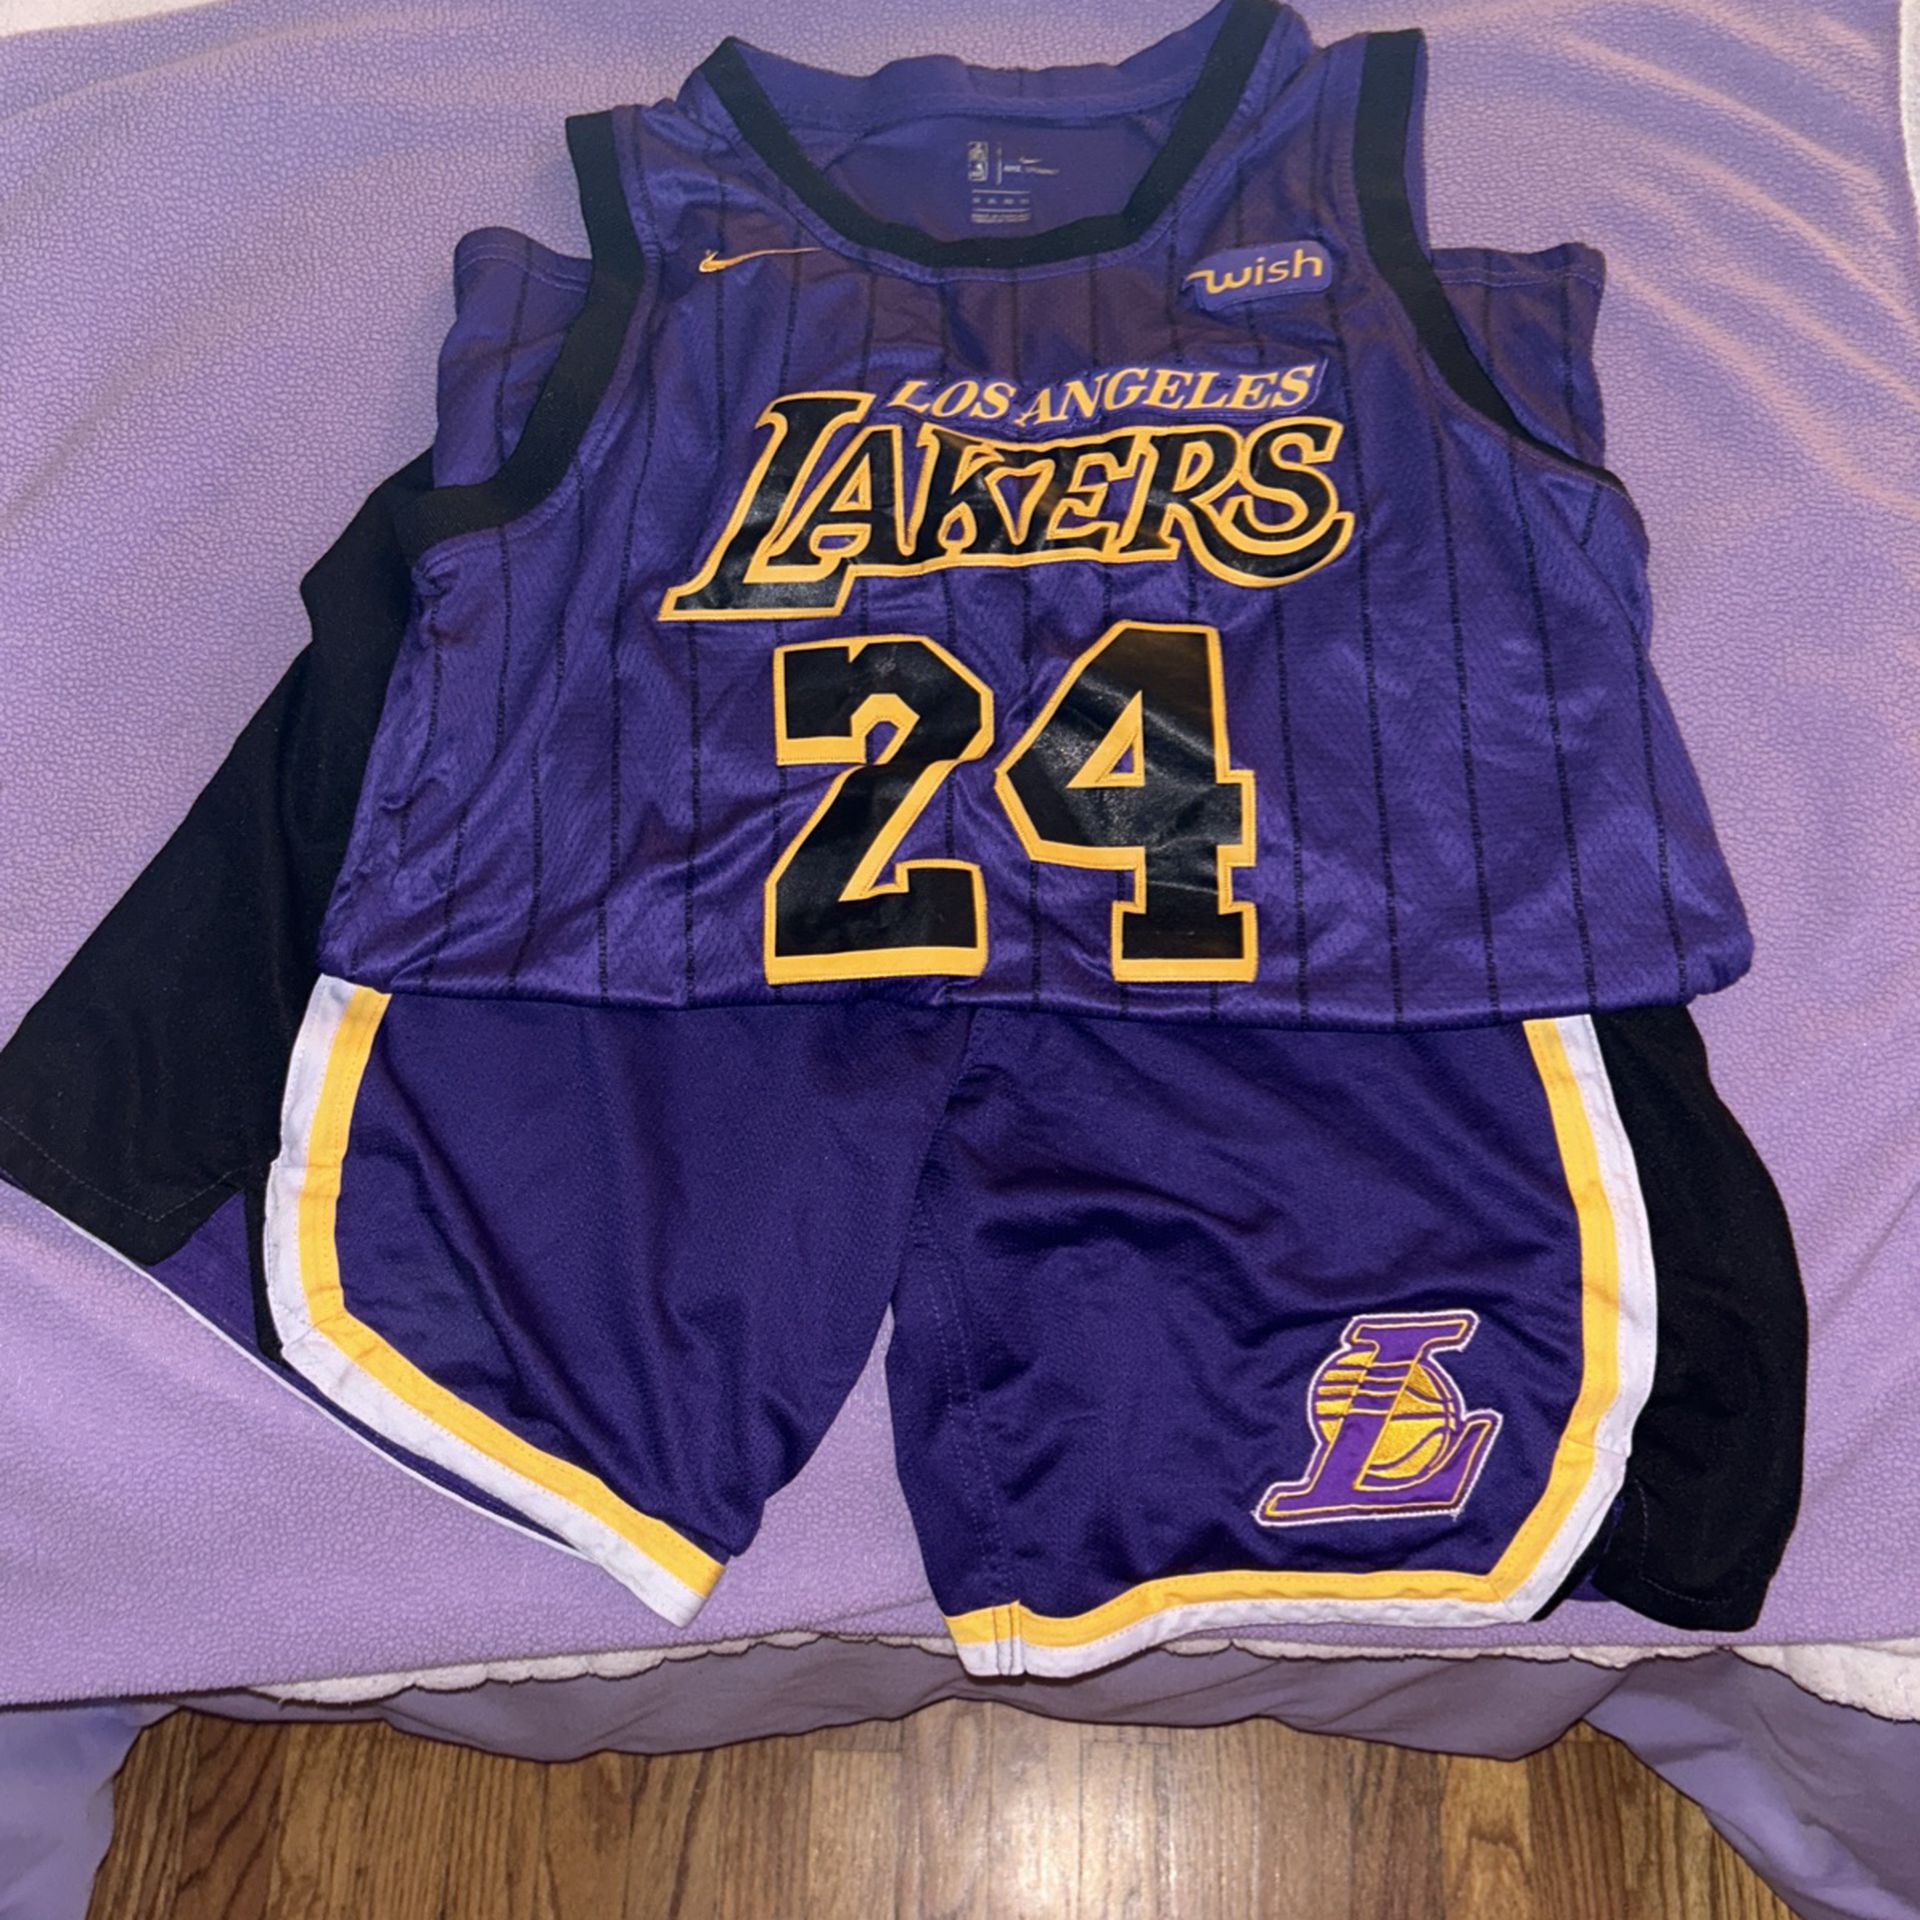 Nike NBA LA Lakers Jersey #24 (Bryant), Purple and Yellow, XL